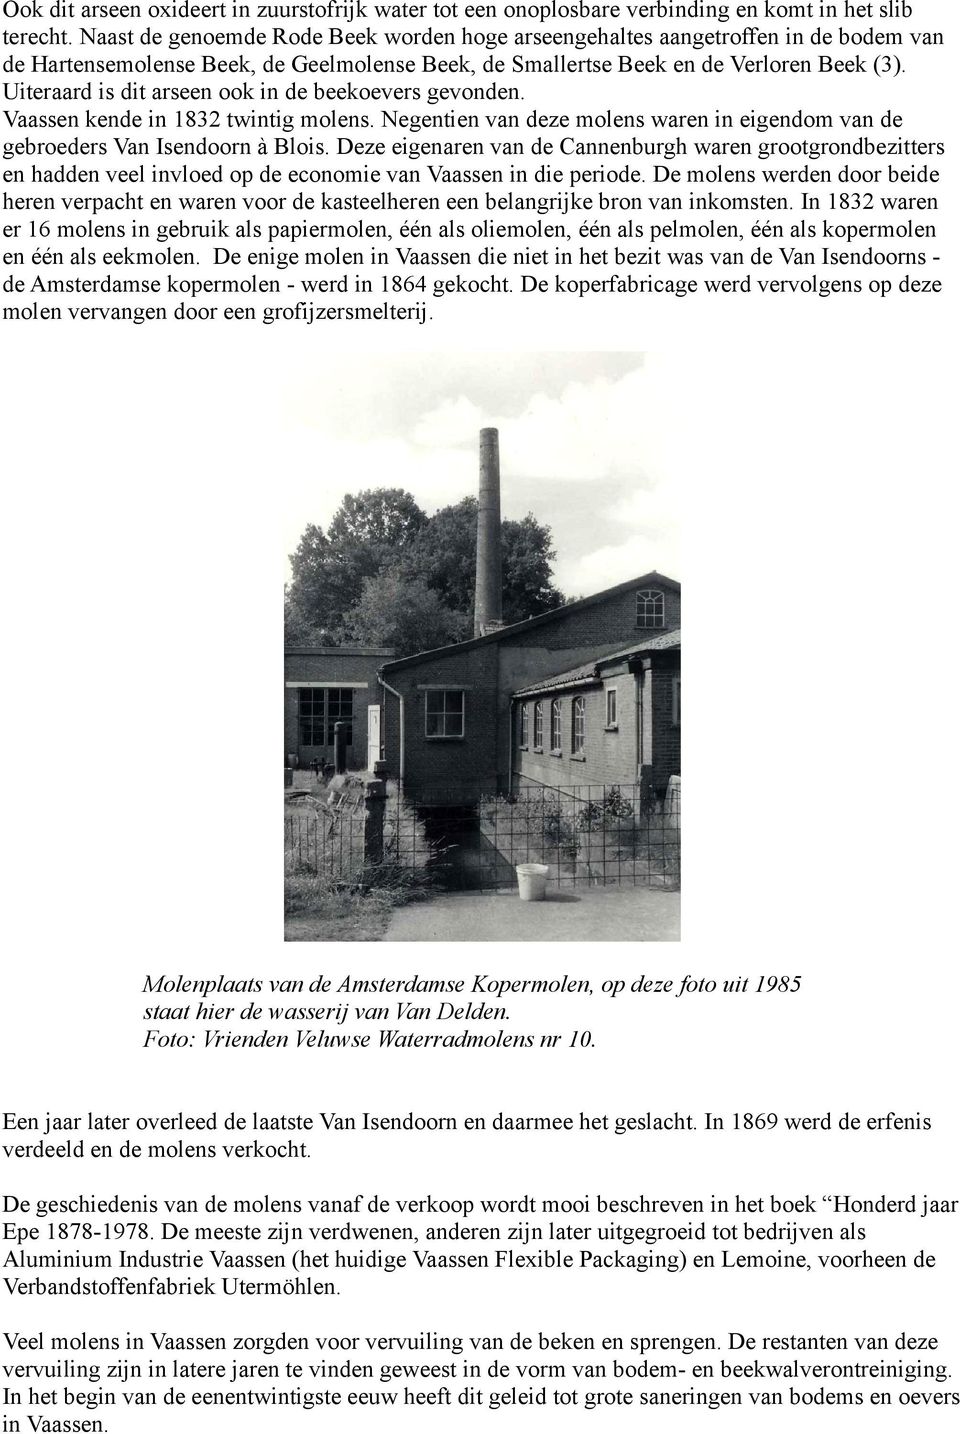 Uiteraard is dit arseen ook in de beekoevers gevonden. Vaassen kende in 1832 twintig molens. Negentien van deze molens waren in eigendom van de gebroeders Van Isendoorn à Blois.